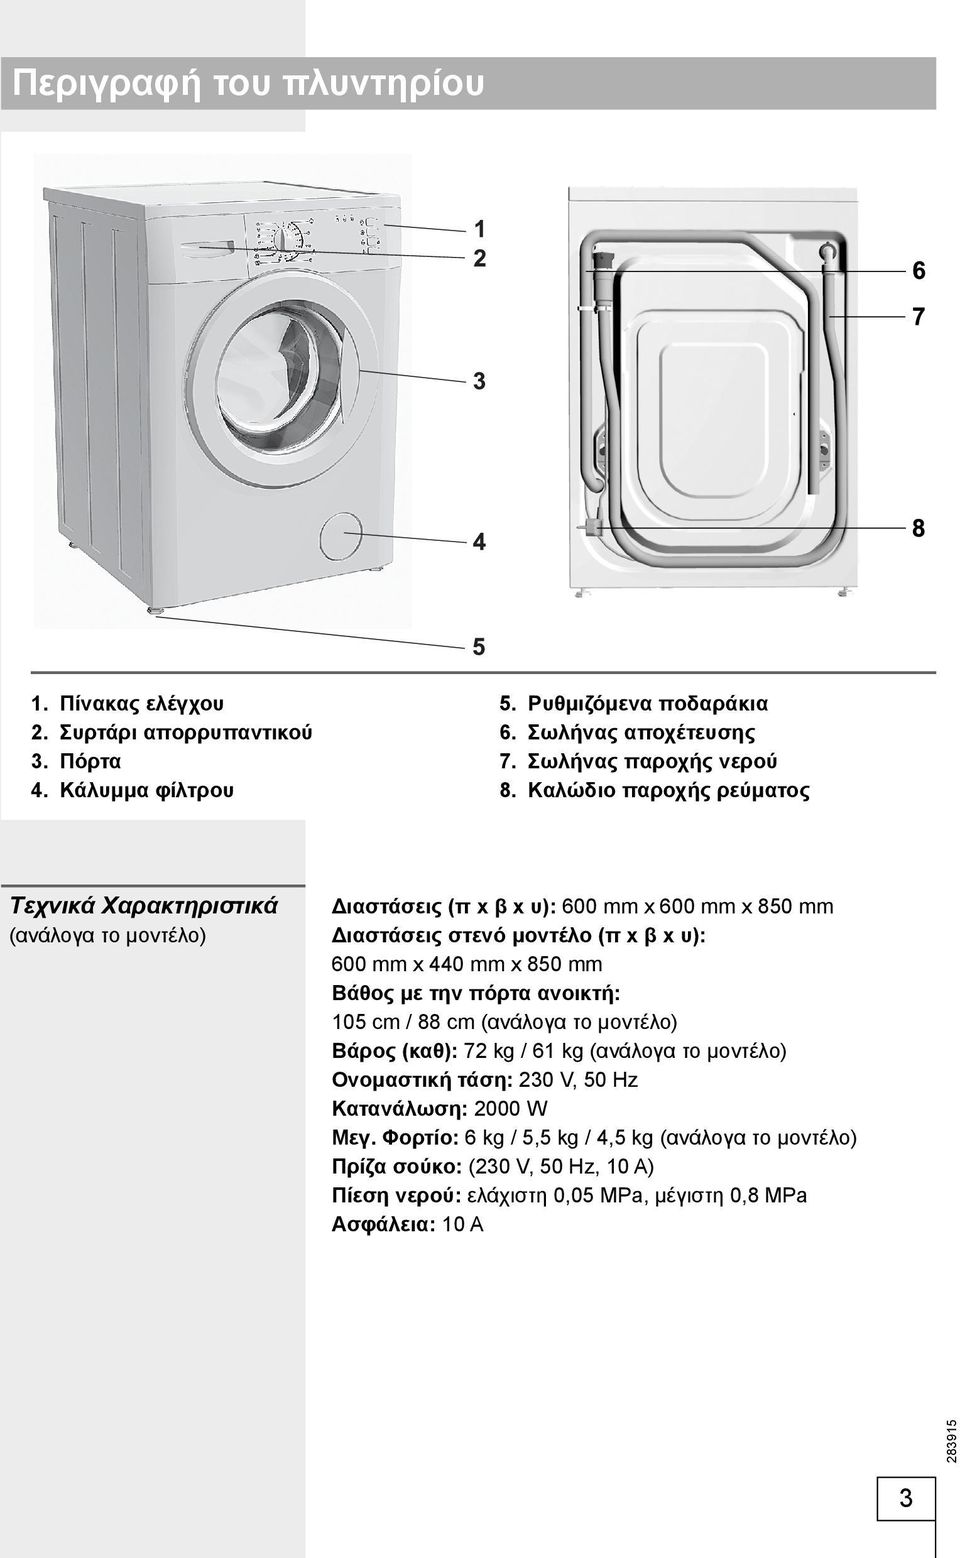 Καλώδιο παροχής ρεύματος Tεχνικά Χαρακτηριστικά (ανάλογα το μοντέλο) Διαστάσεις (π x β x υ): 600 mm x 600 mm x 850 mm Διαστάσεις στενό μοντέλο (π x β x υ): 600 mm x